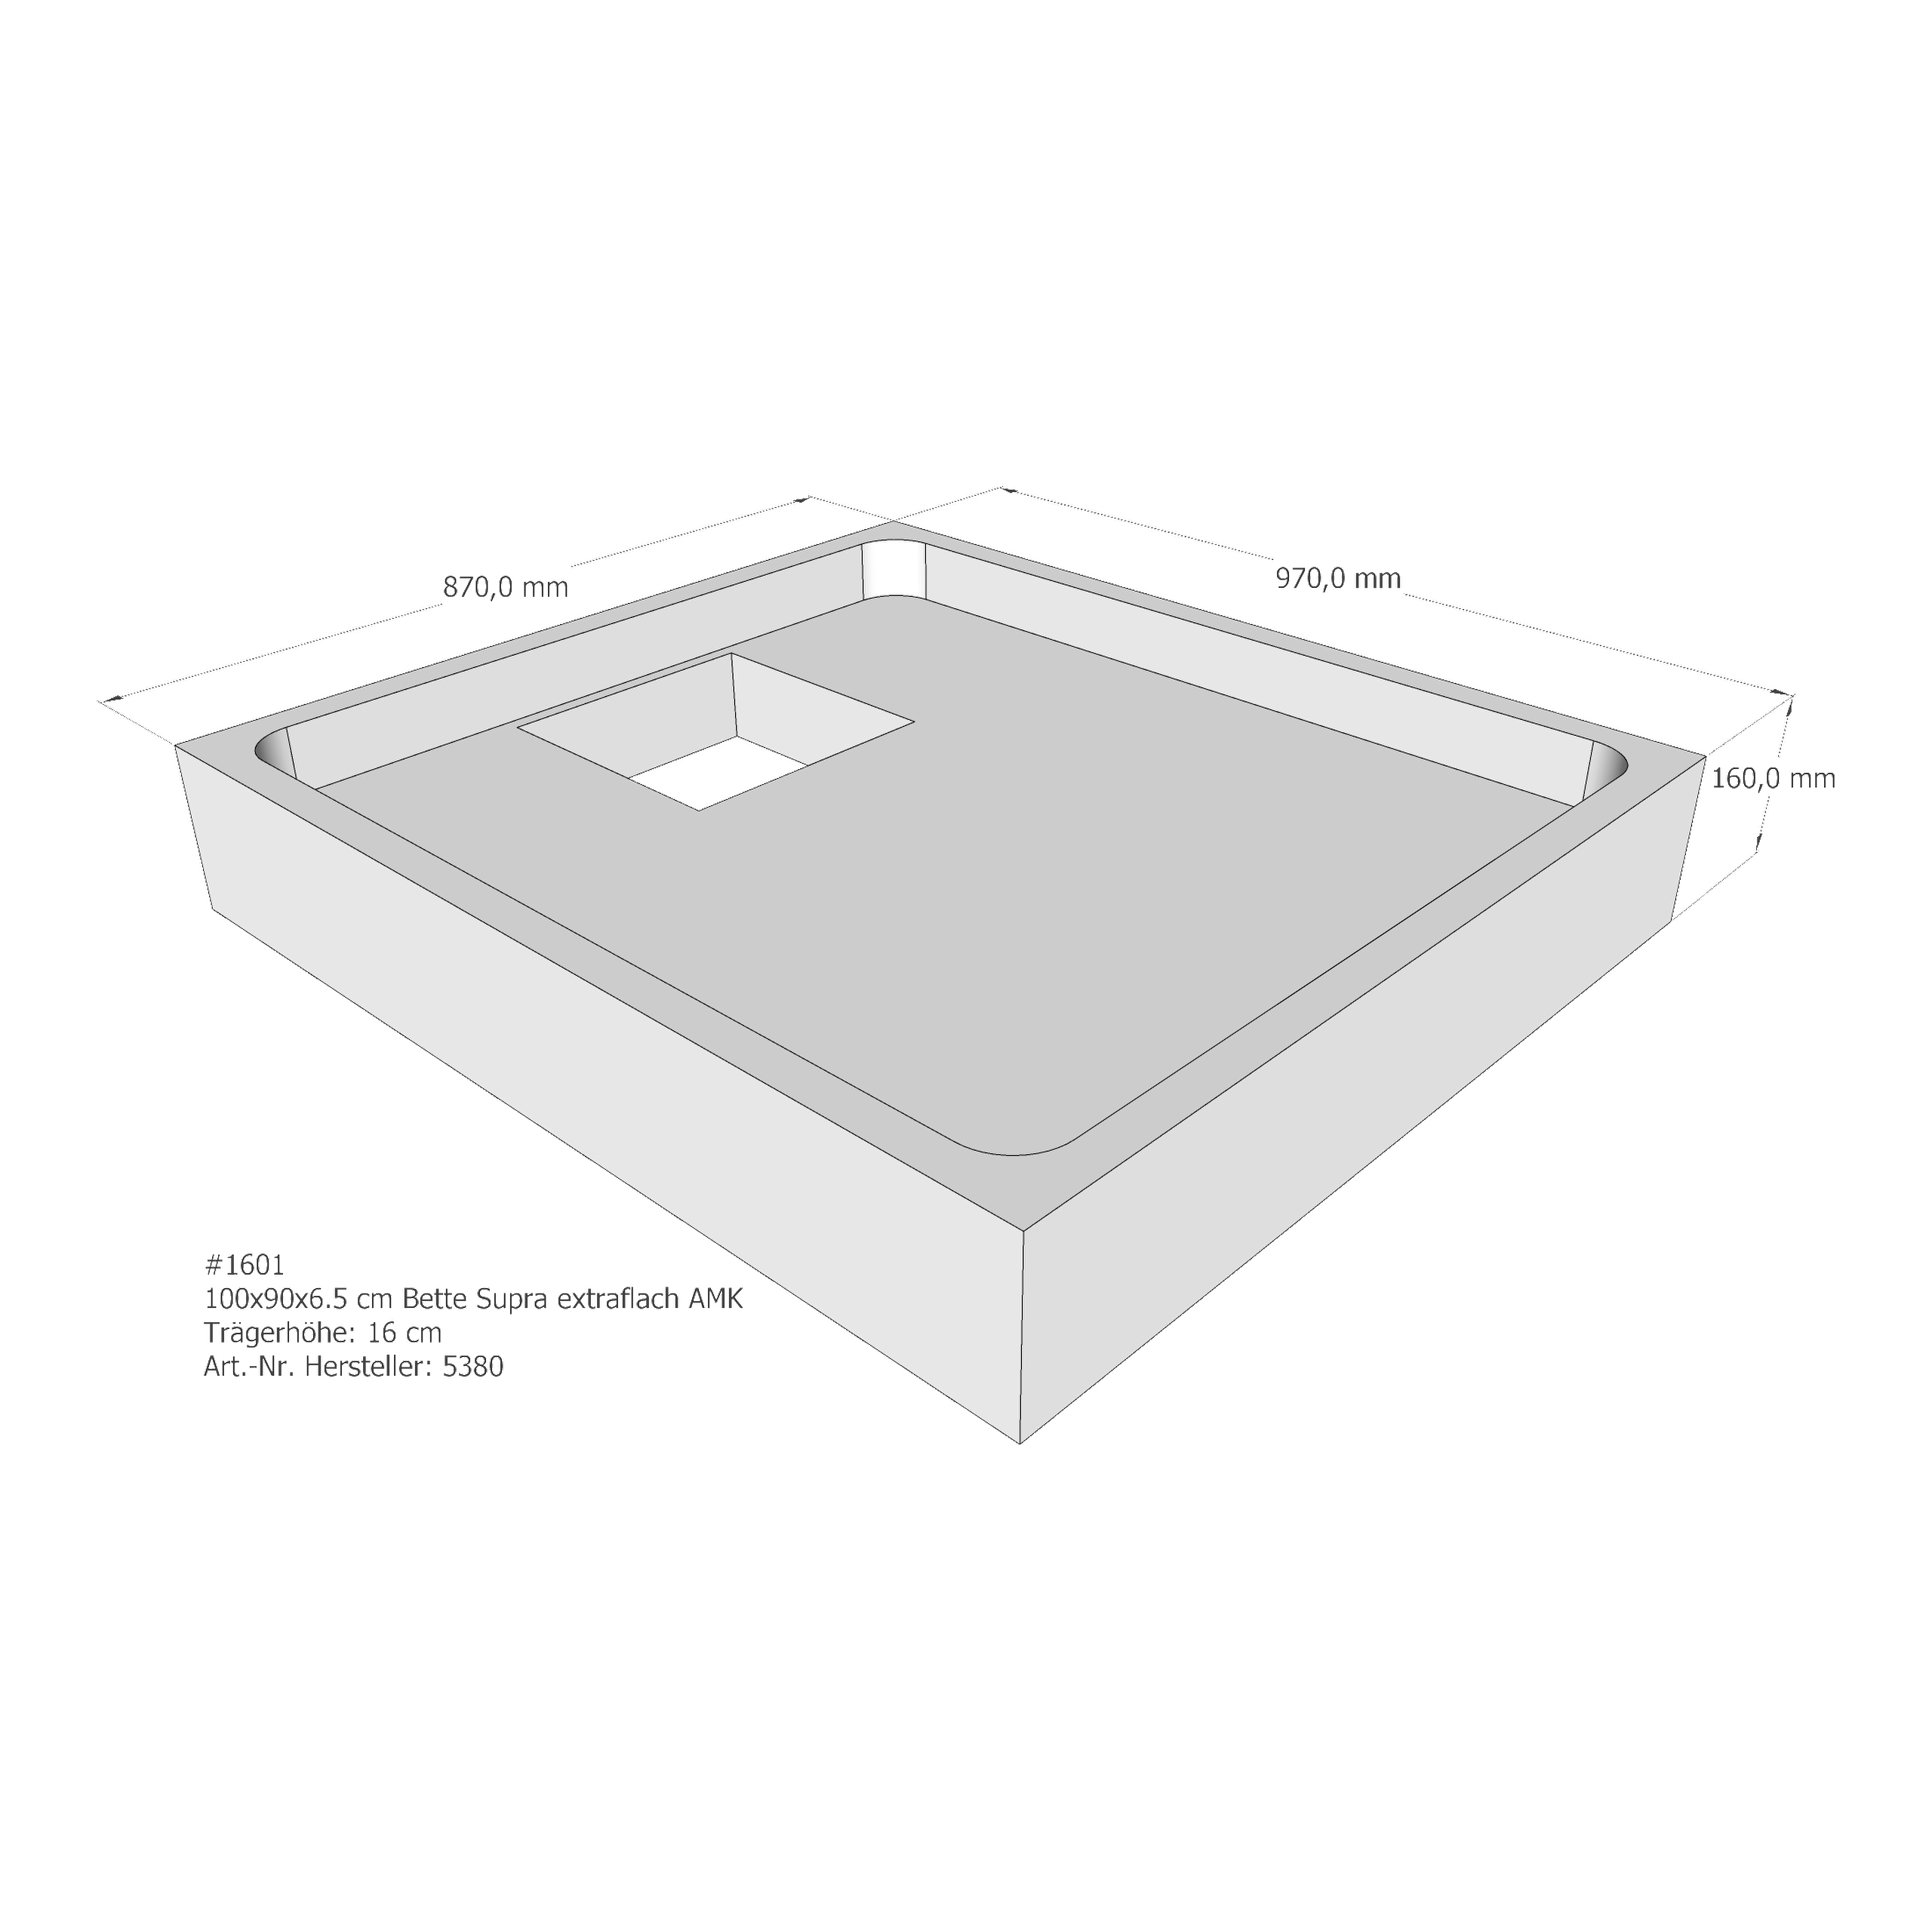 Duschwannenträger für Bette BetteSupra (extraflach) 100 × 90 × 6,5 cm